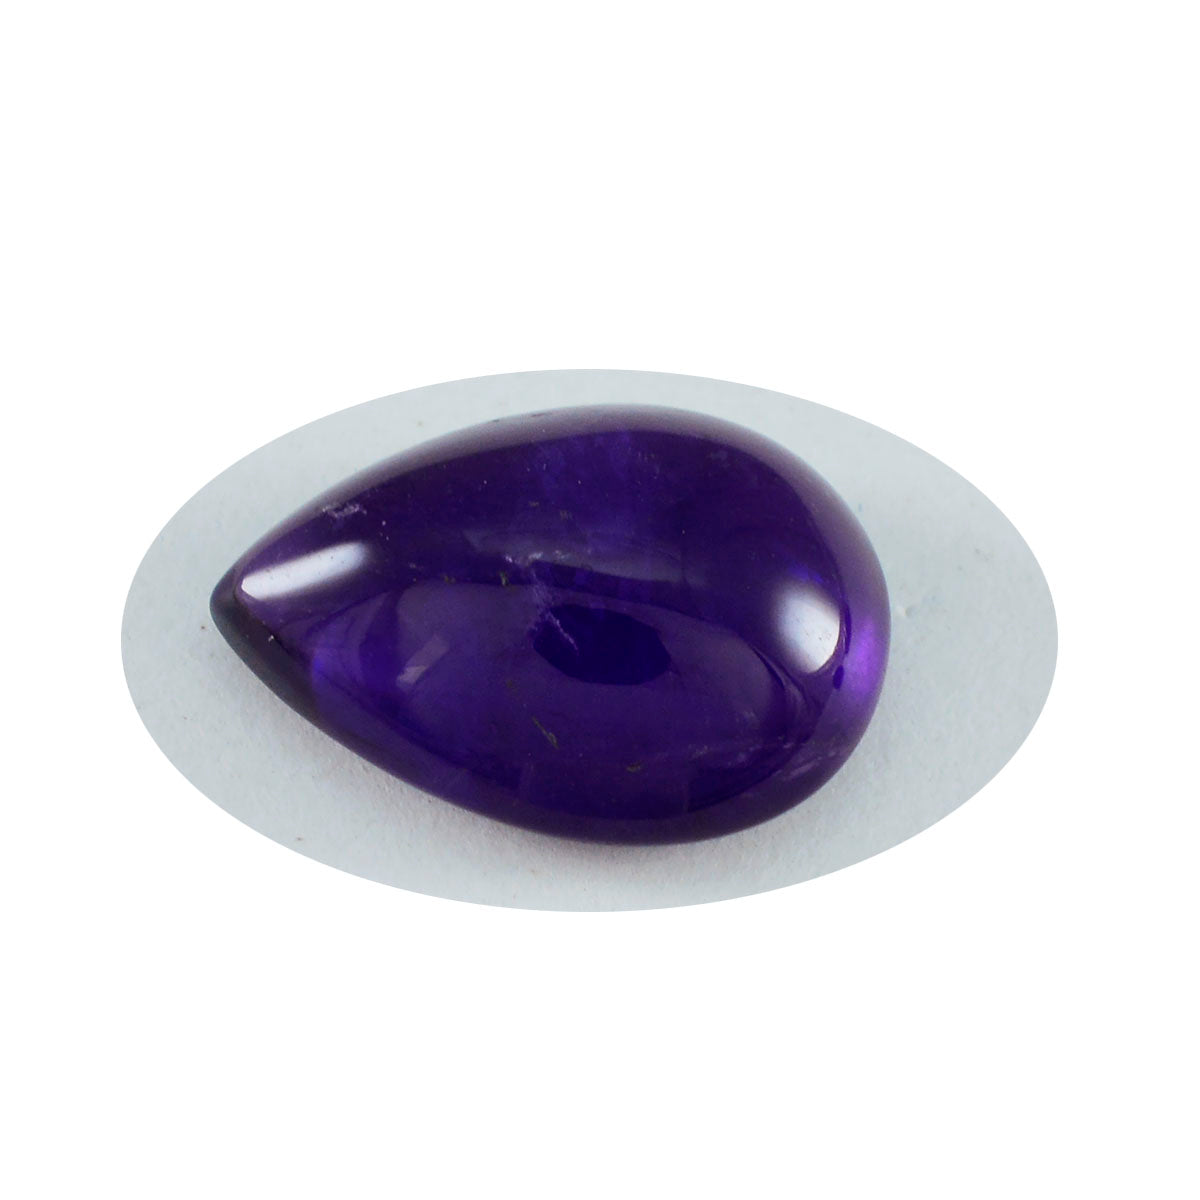 riyogems 1шт фиолетовый аметист кабошон 12х16 мм грушевидной формы камень замечательного качества